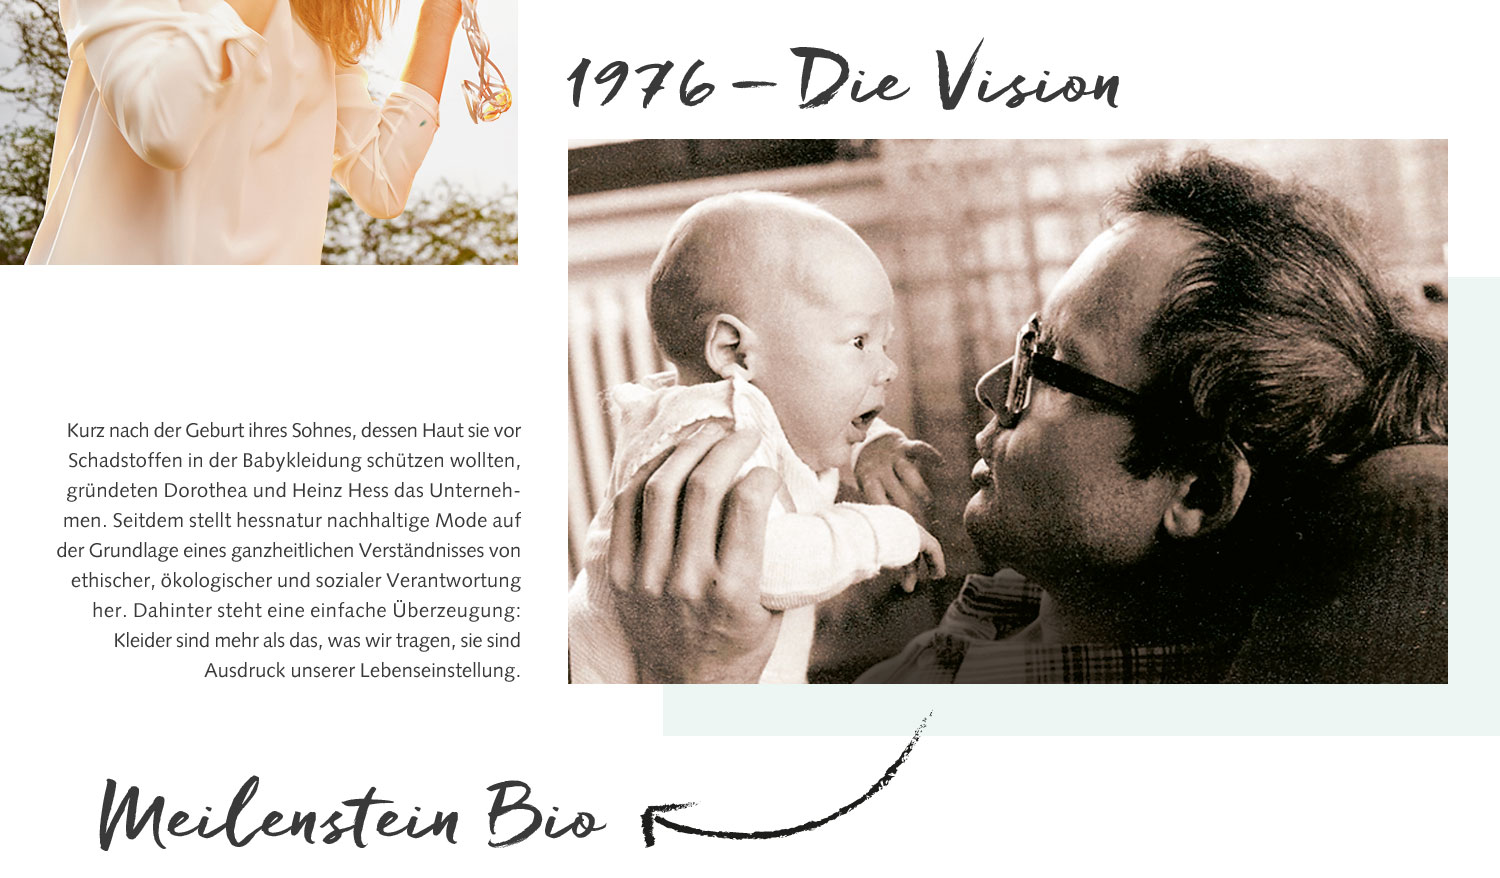 1976 - Die Vision